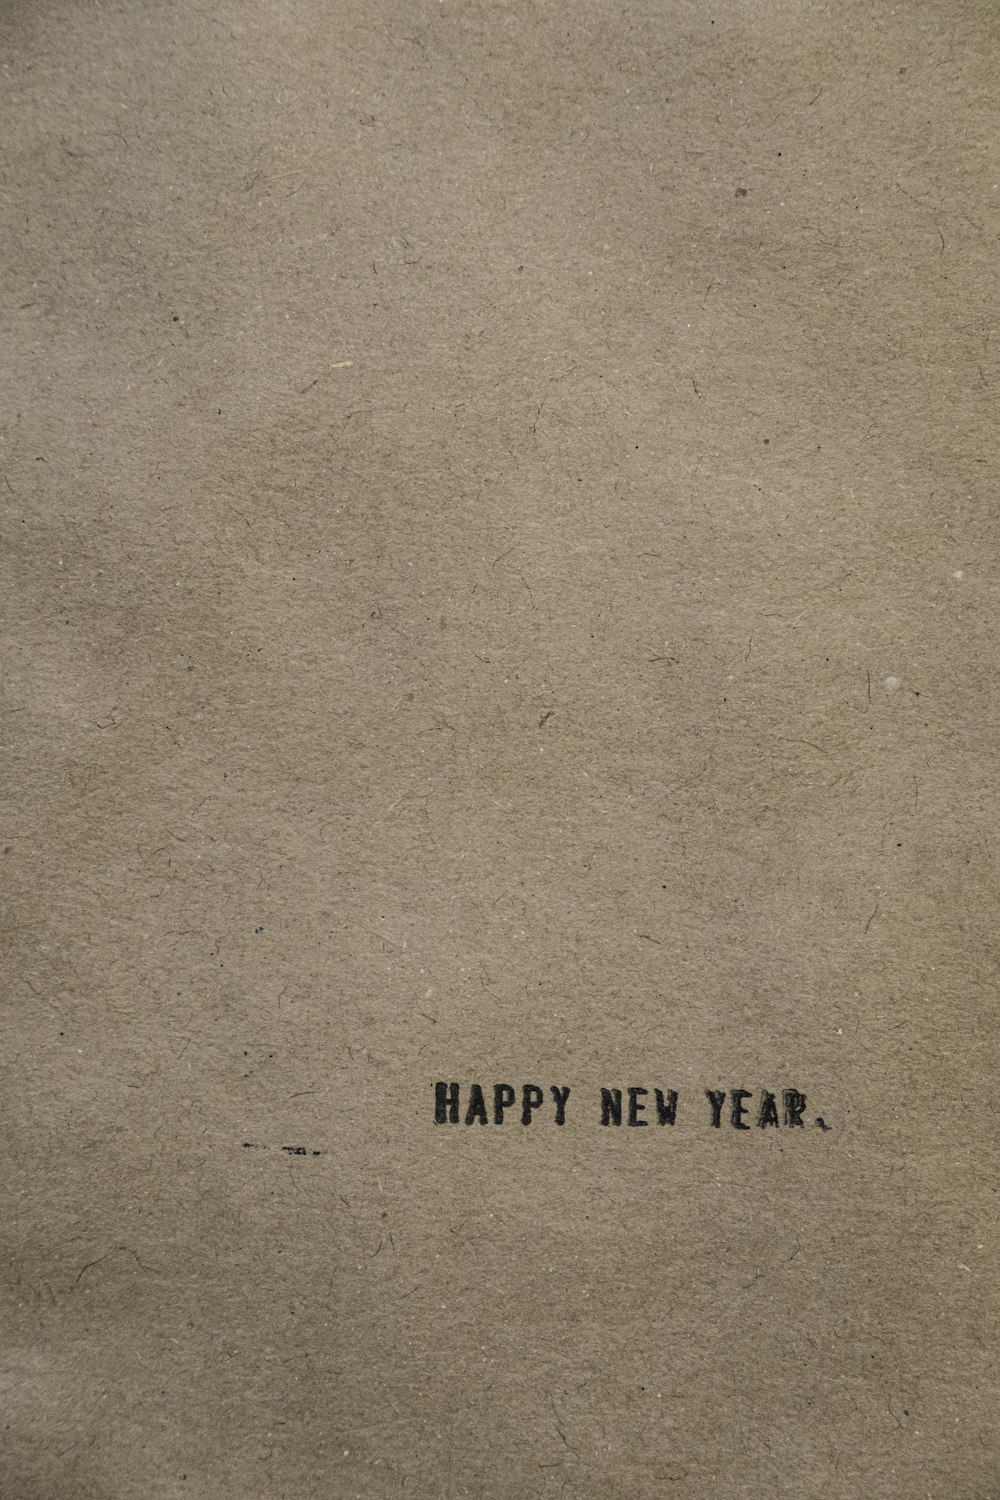 Un pedazo de papel marrón con las palabras Feliz Año Nuevo escritas en él